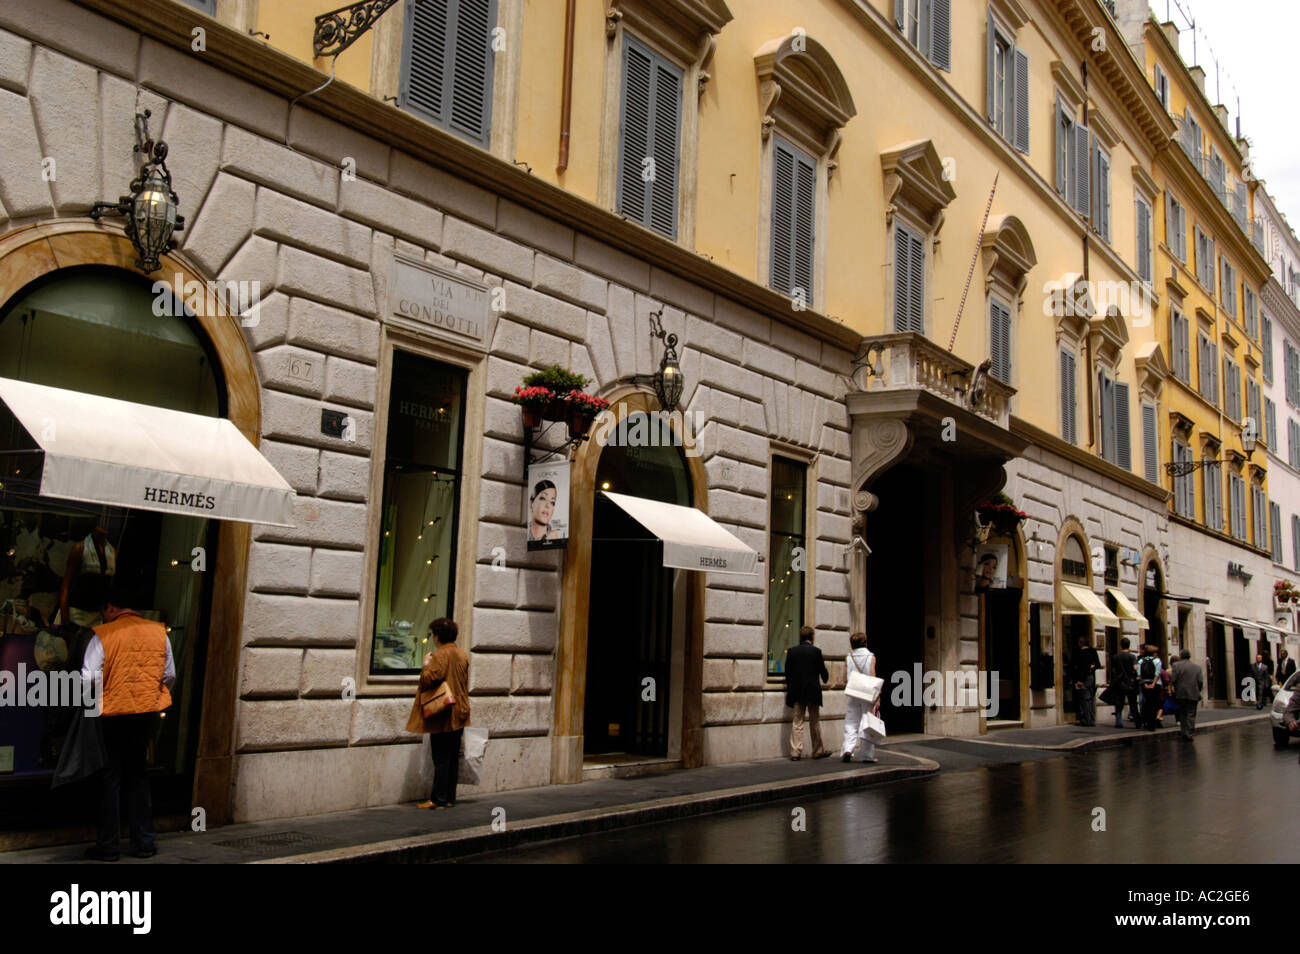 Shopping on Via Condotti Rome Italy Stock Photo - Alamy